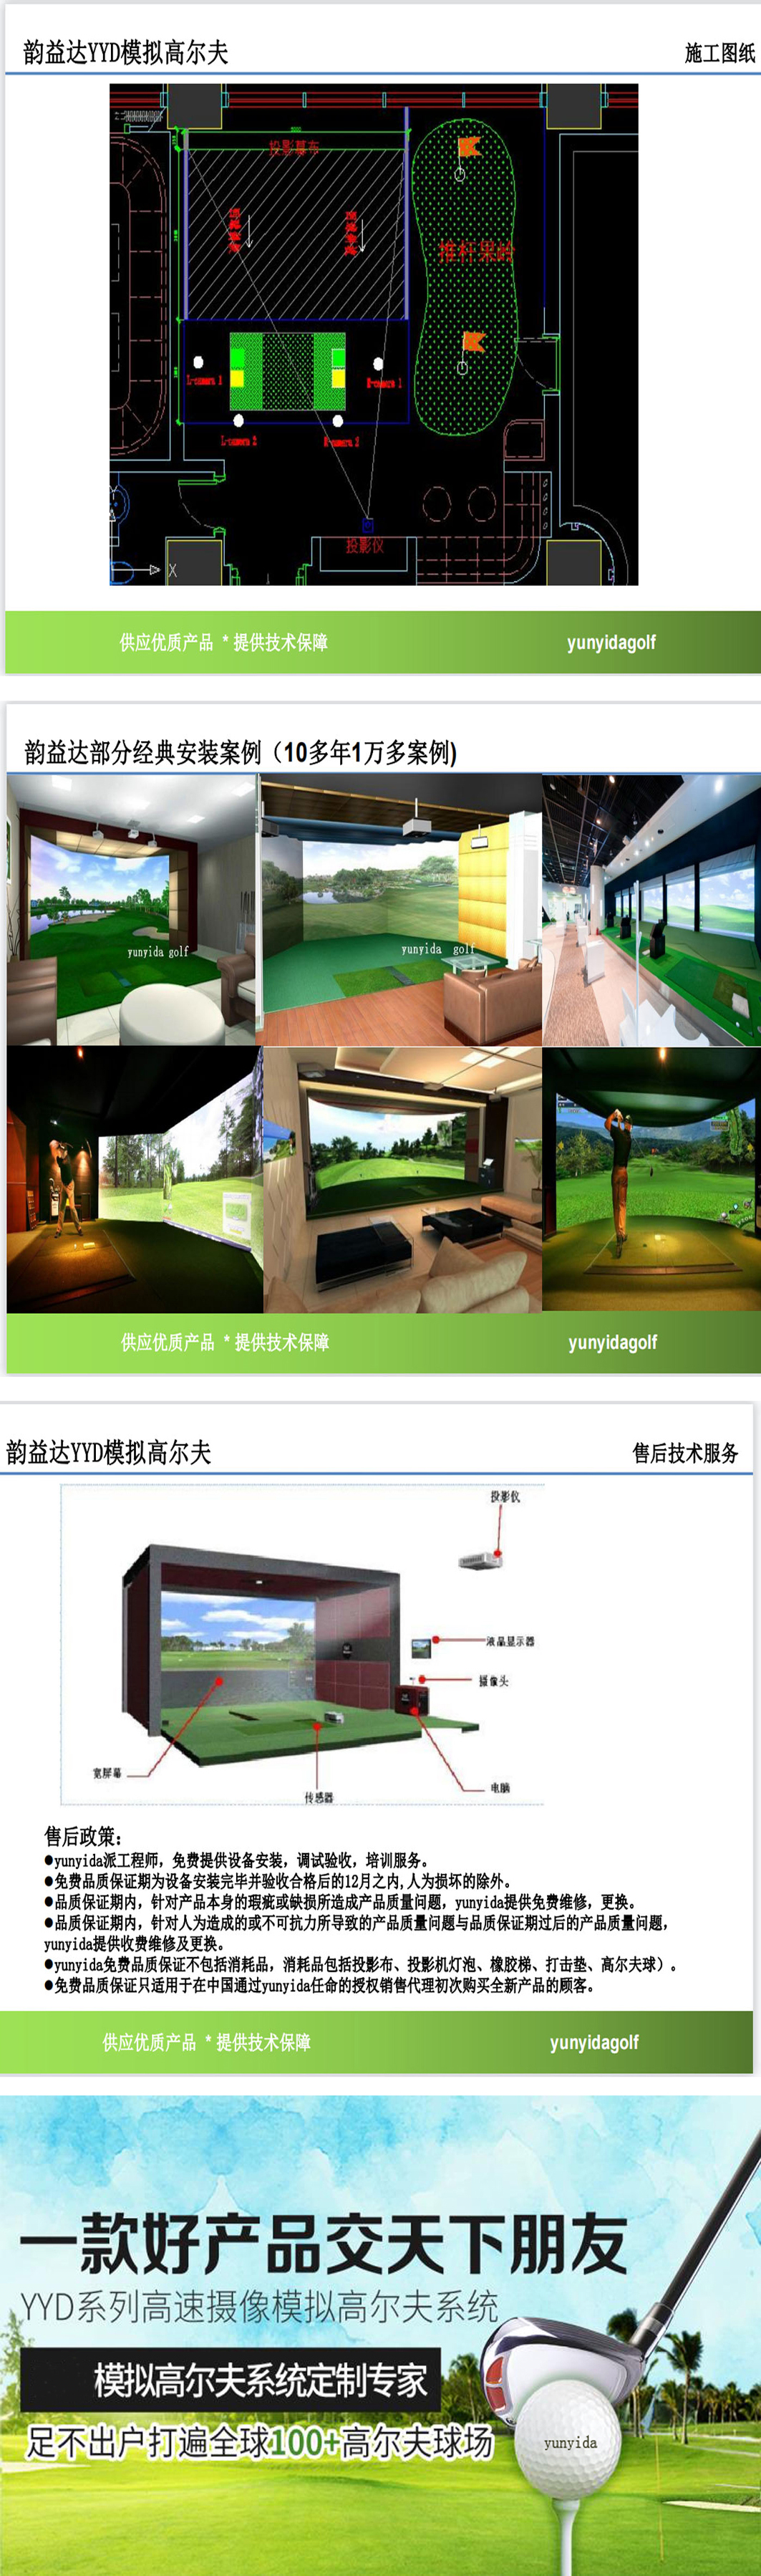 高尔夫模拟教练技术 02.jpg